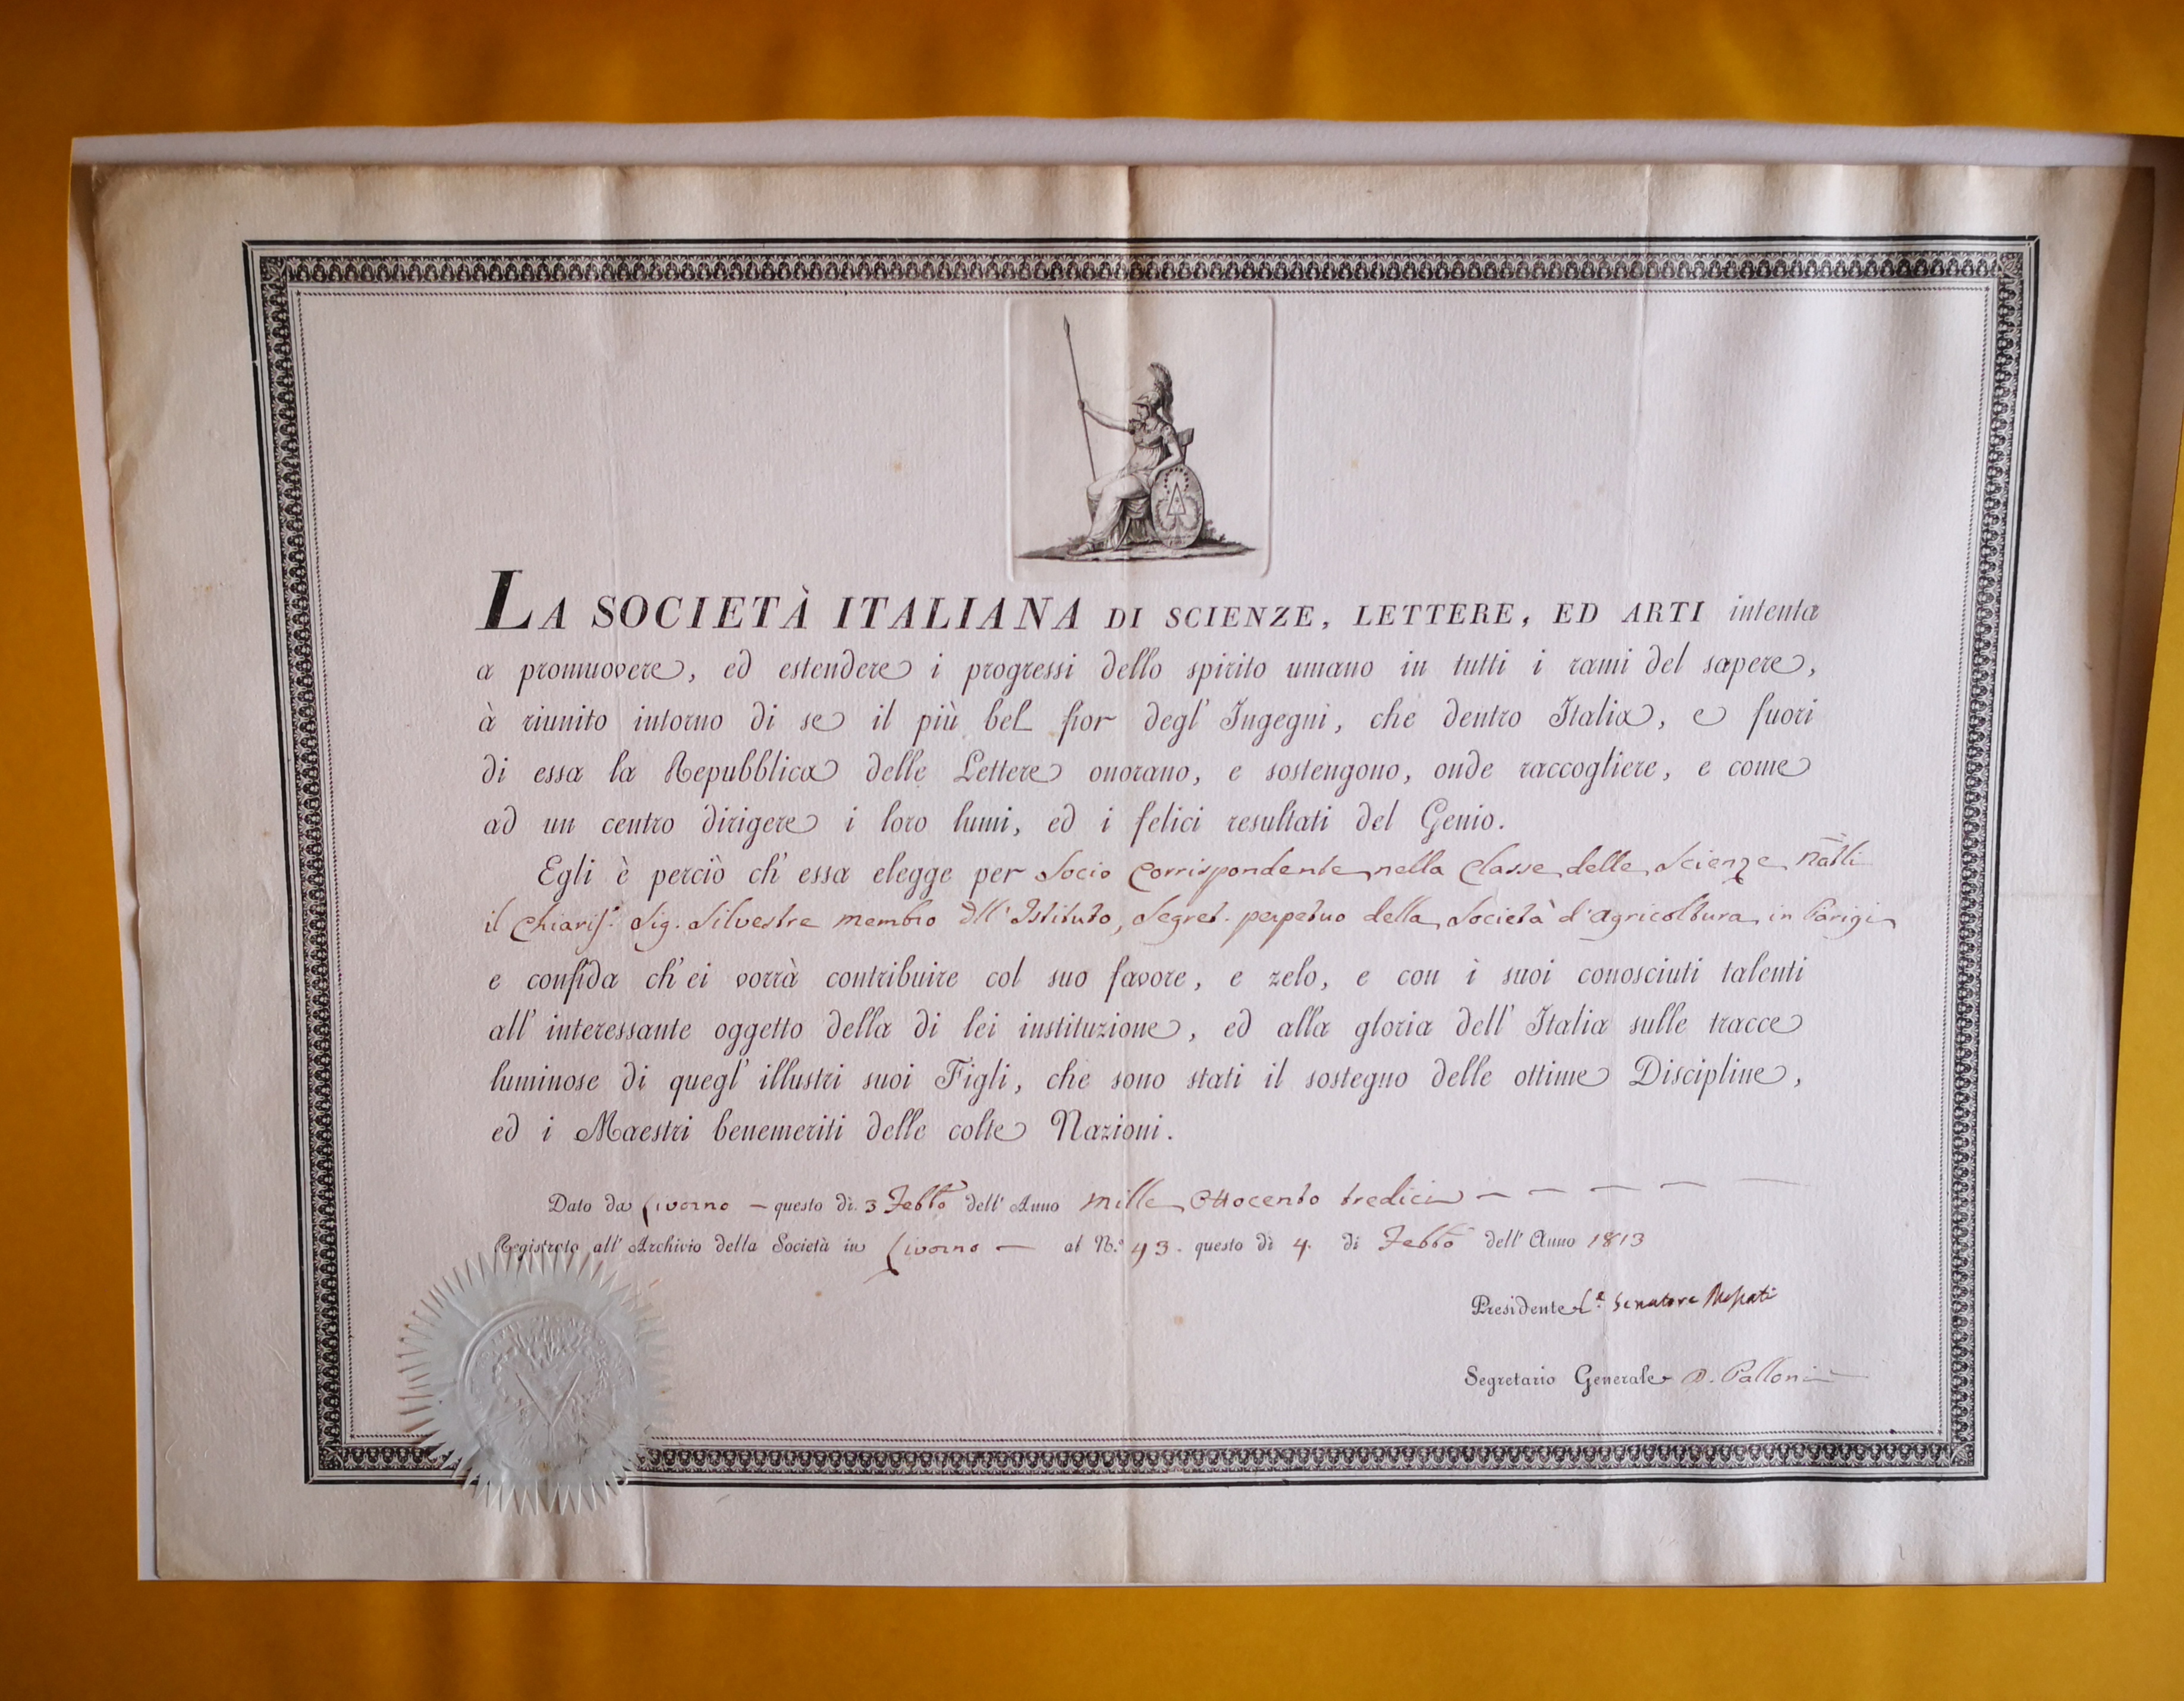  Diplôme d'associé correspondant de Società Italiana di Scienze, Lettere ed Arti décerné à Augustin-François de Silvestre - Document 1